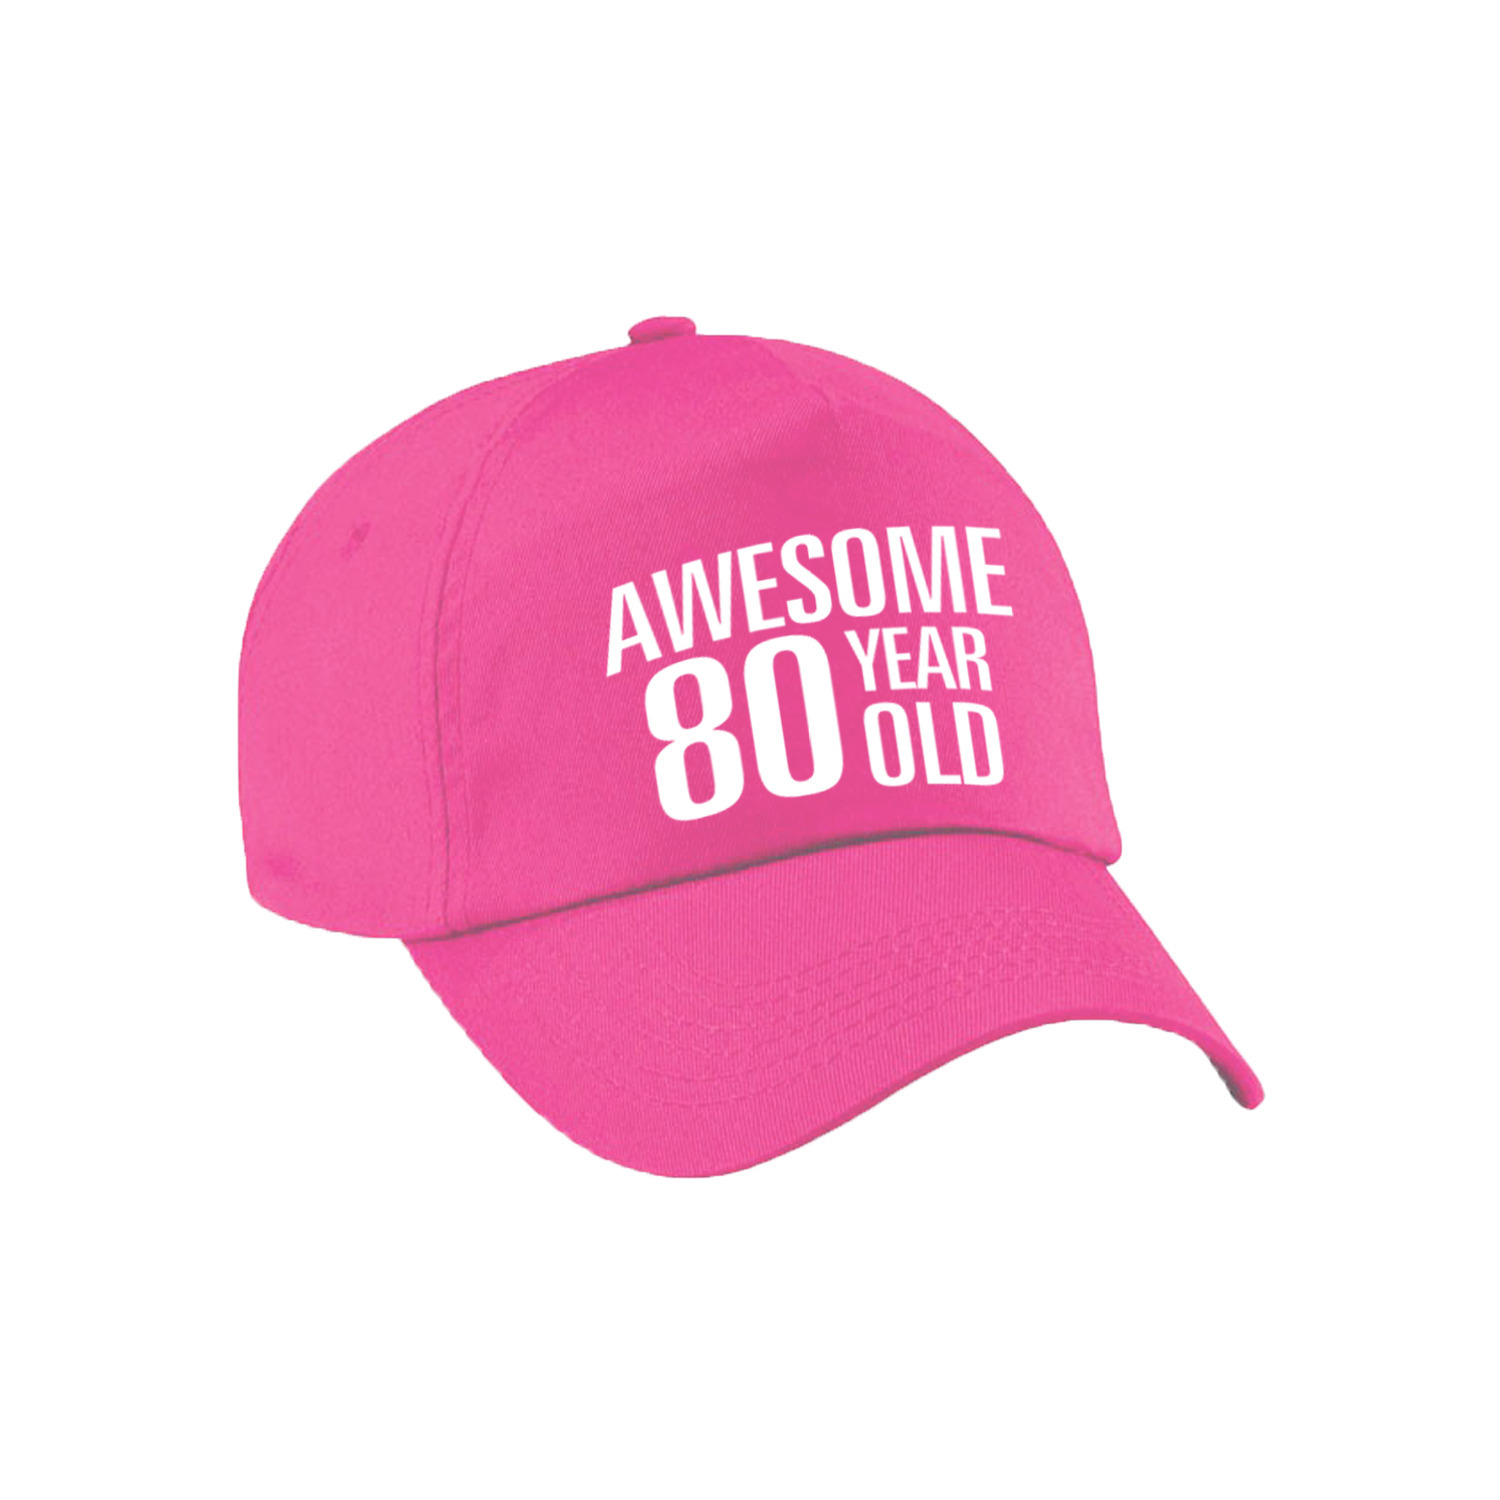 Awesome 80 year old verjaardag pet-cap roze voor dames en heren